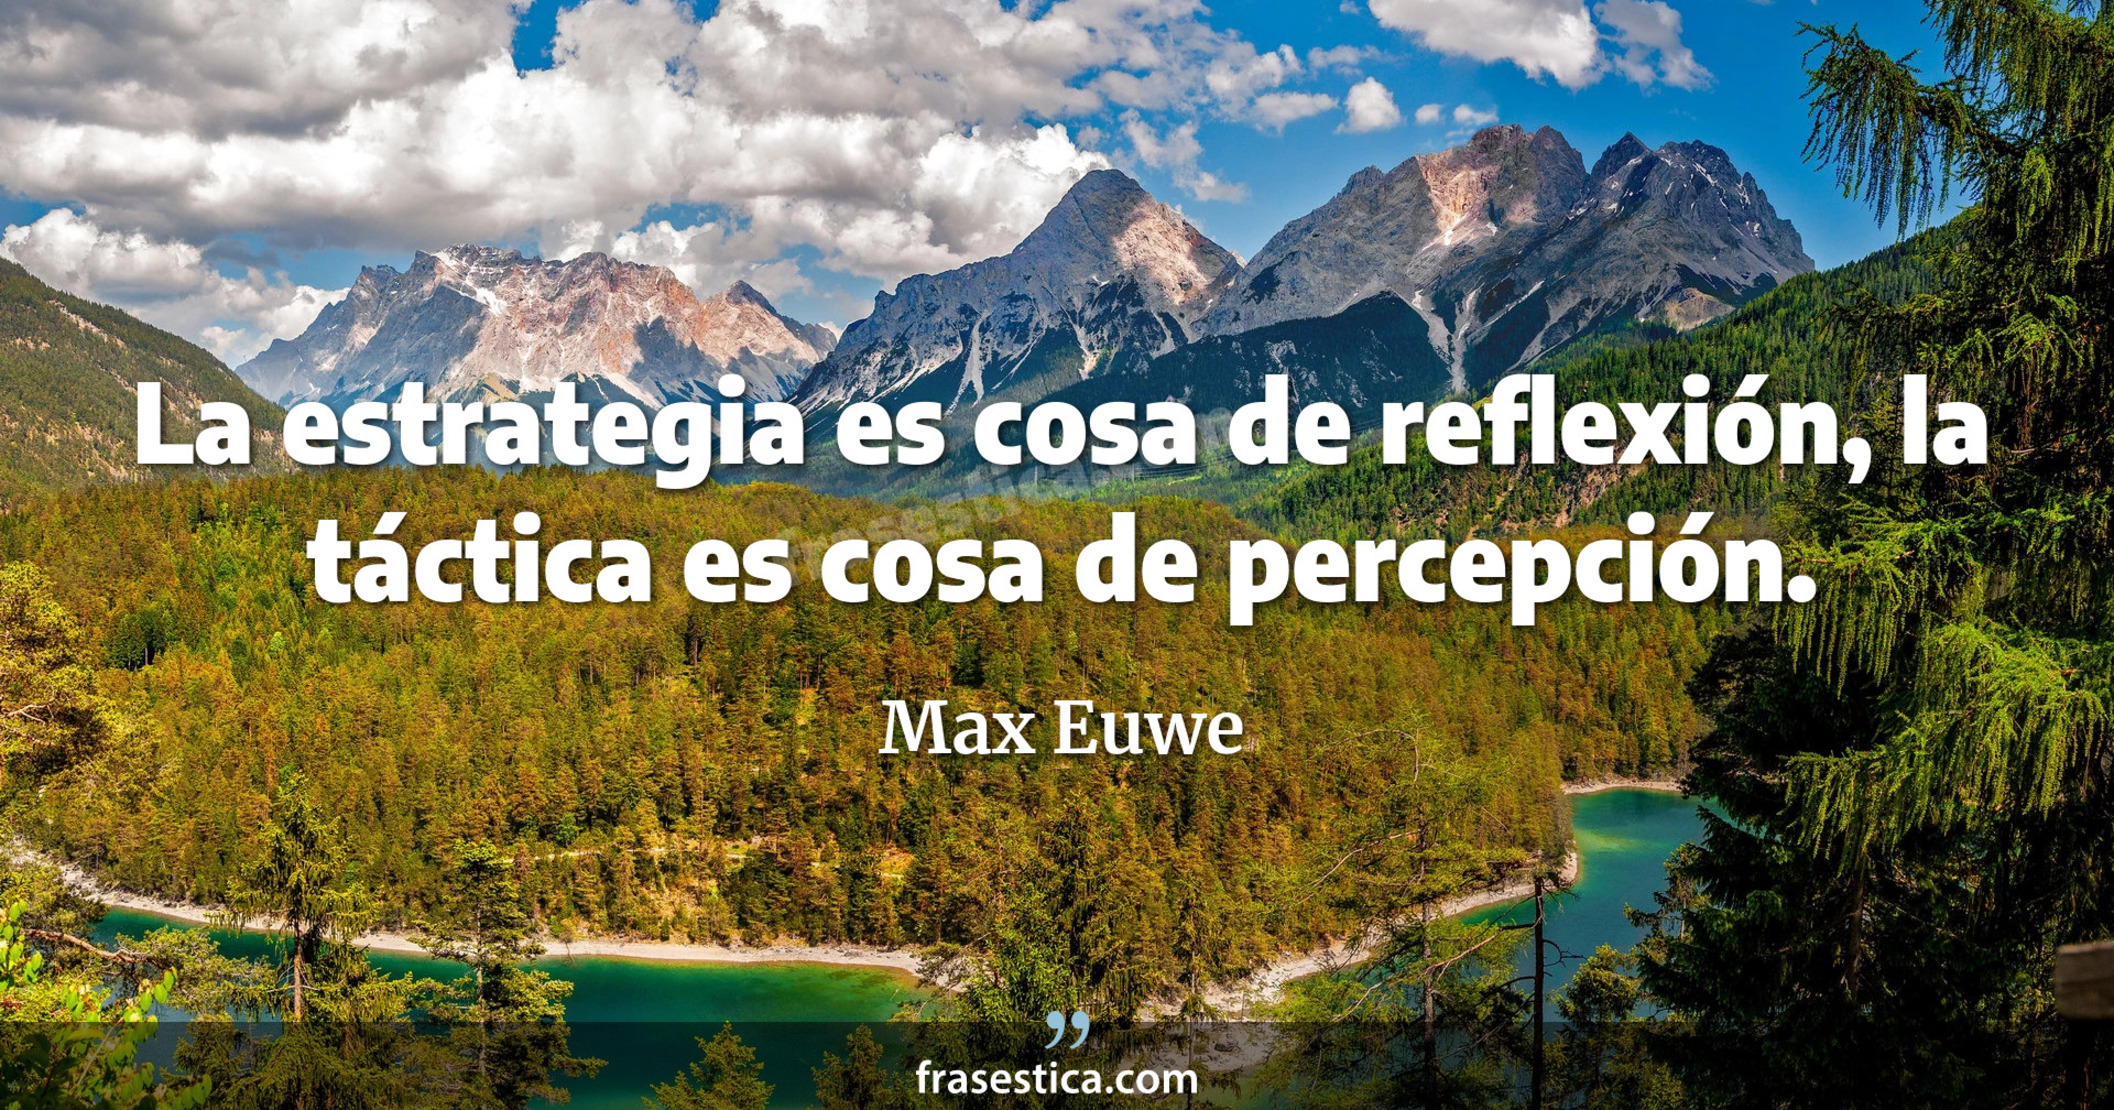 La estrategia es cosa de reflexión, la táctica es cosa de percepción. - Max Euwe